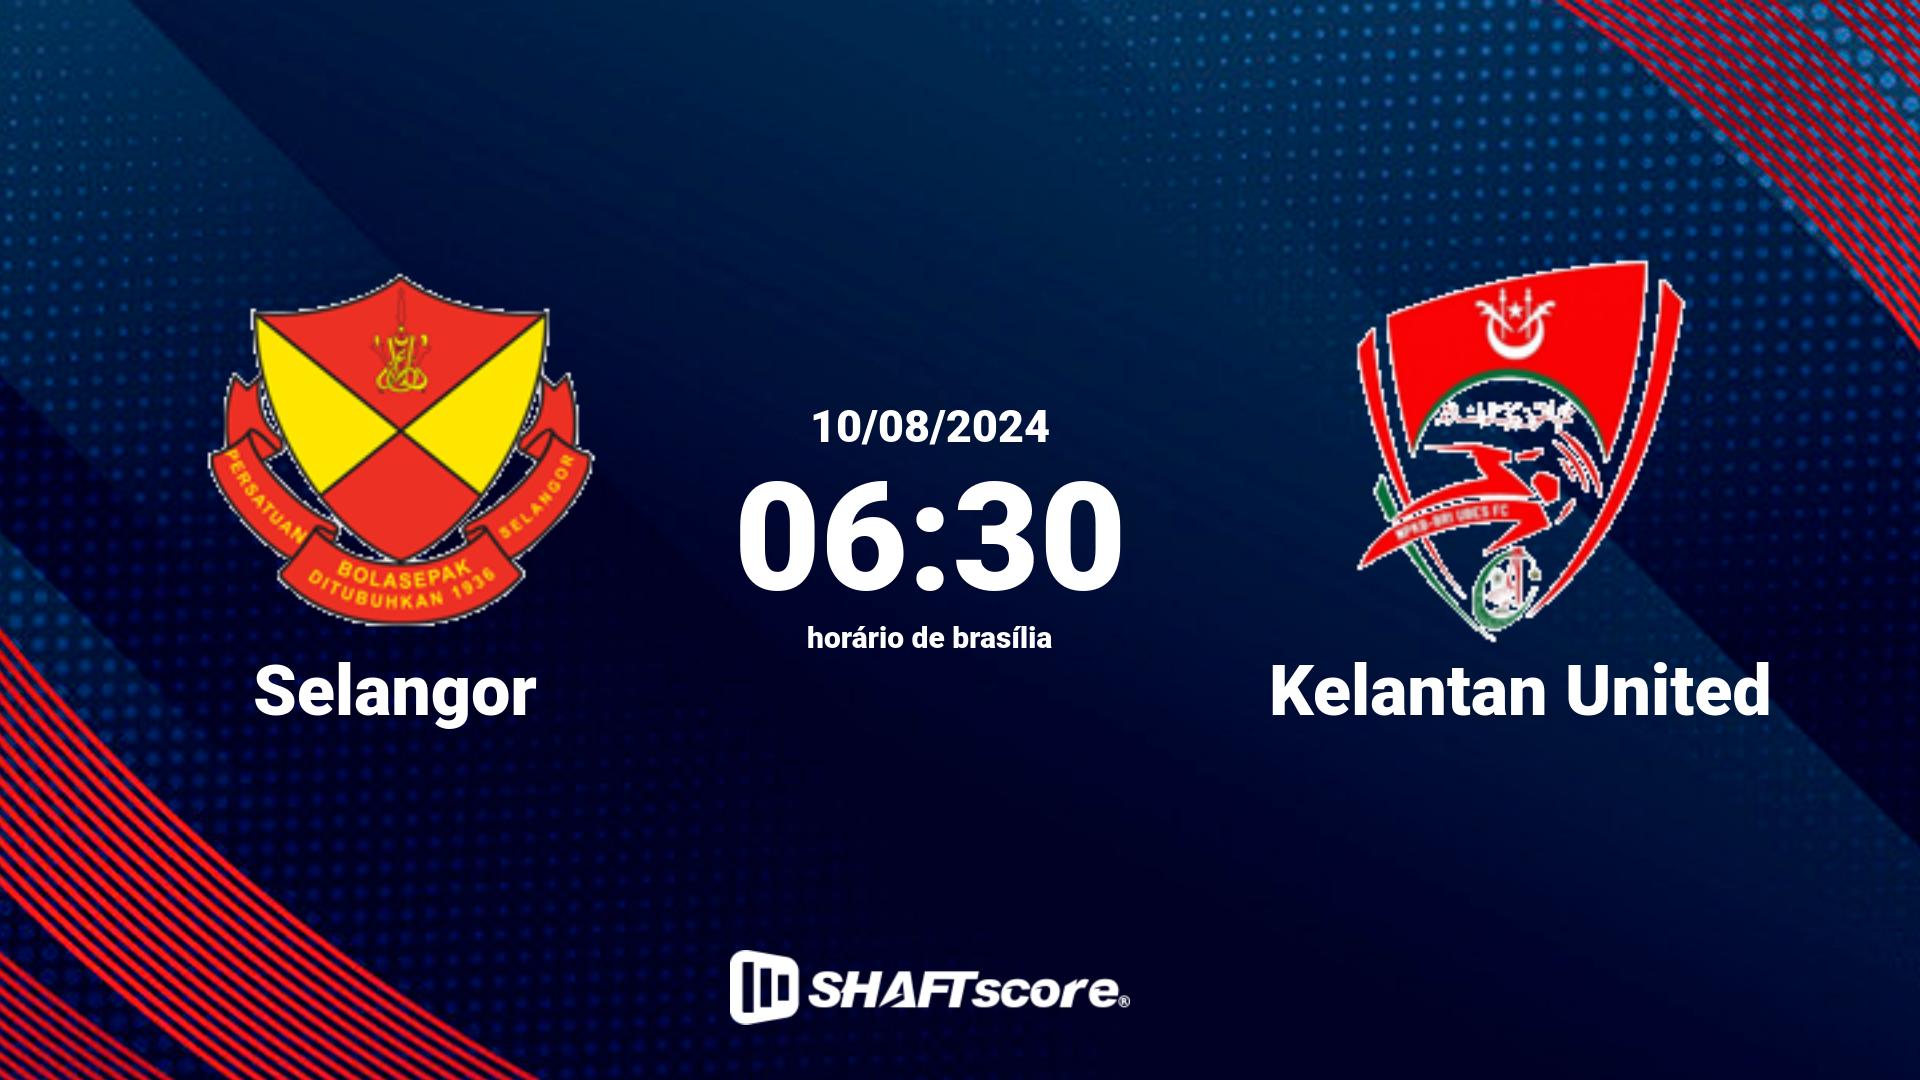 Estatísticas do jogo Selangor vs Kelantan United 10.08 06:30